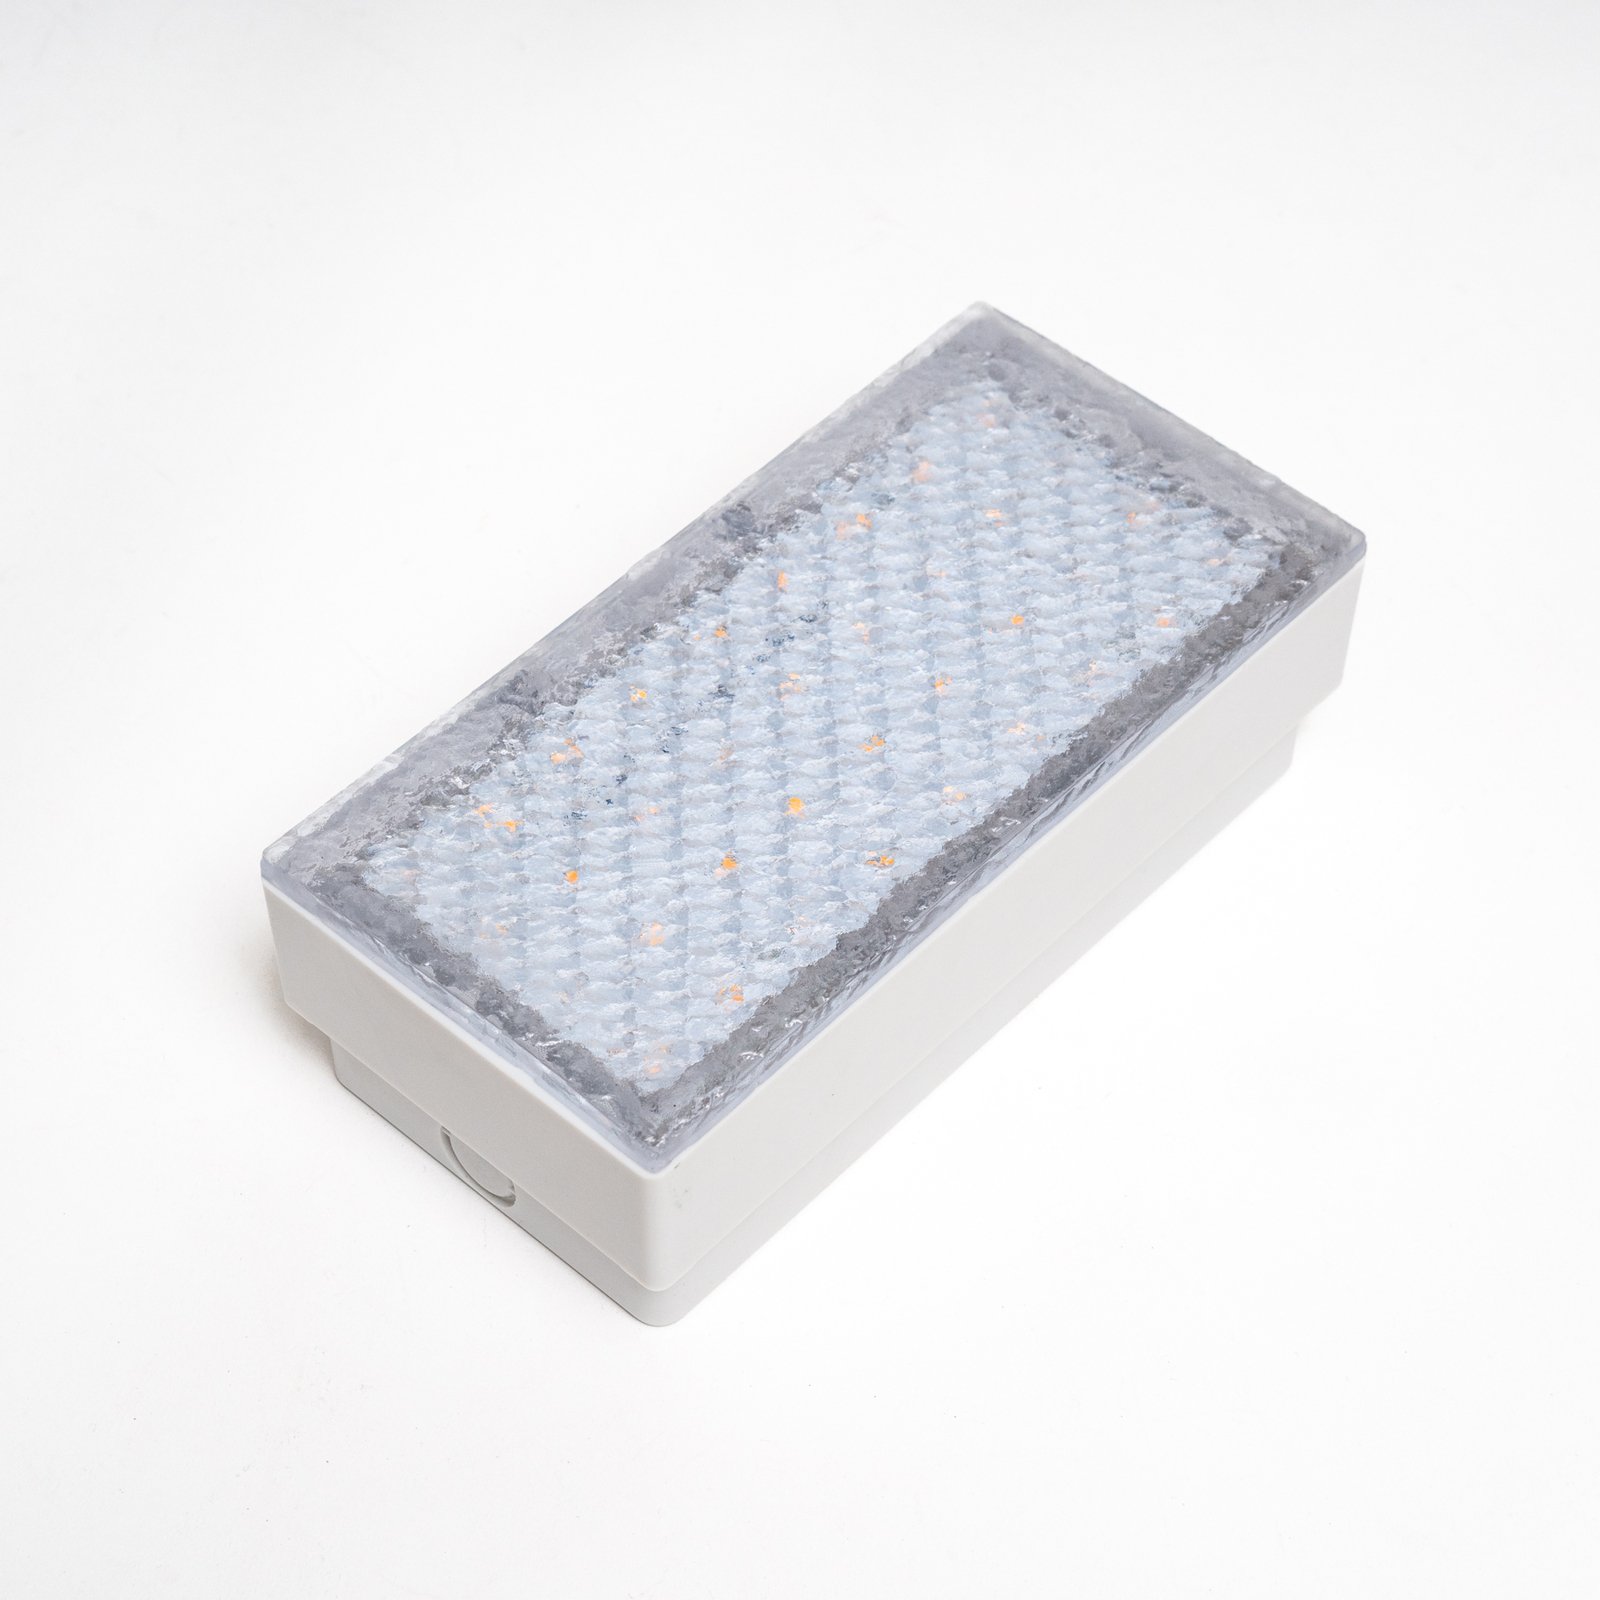 Prios Ewgenie LED-lattiauppovalaisin, 20 x 10 cm